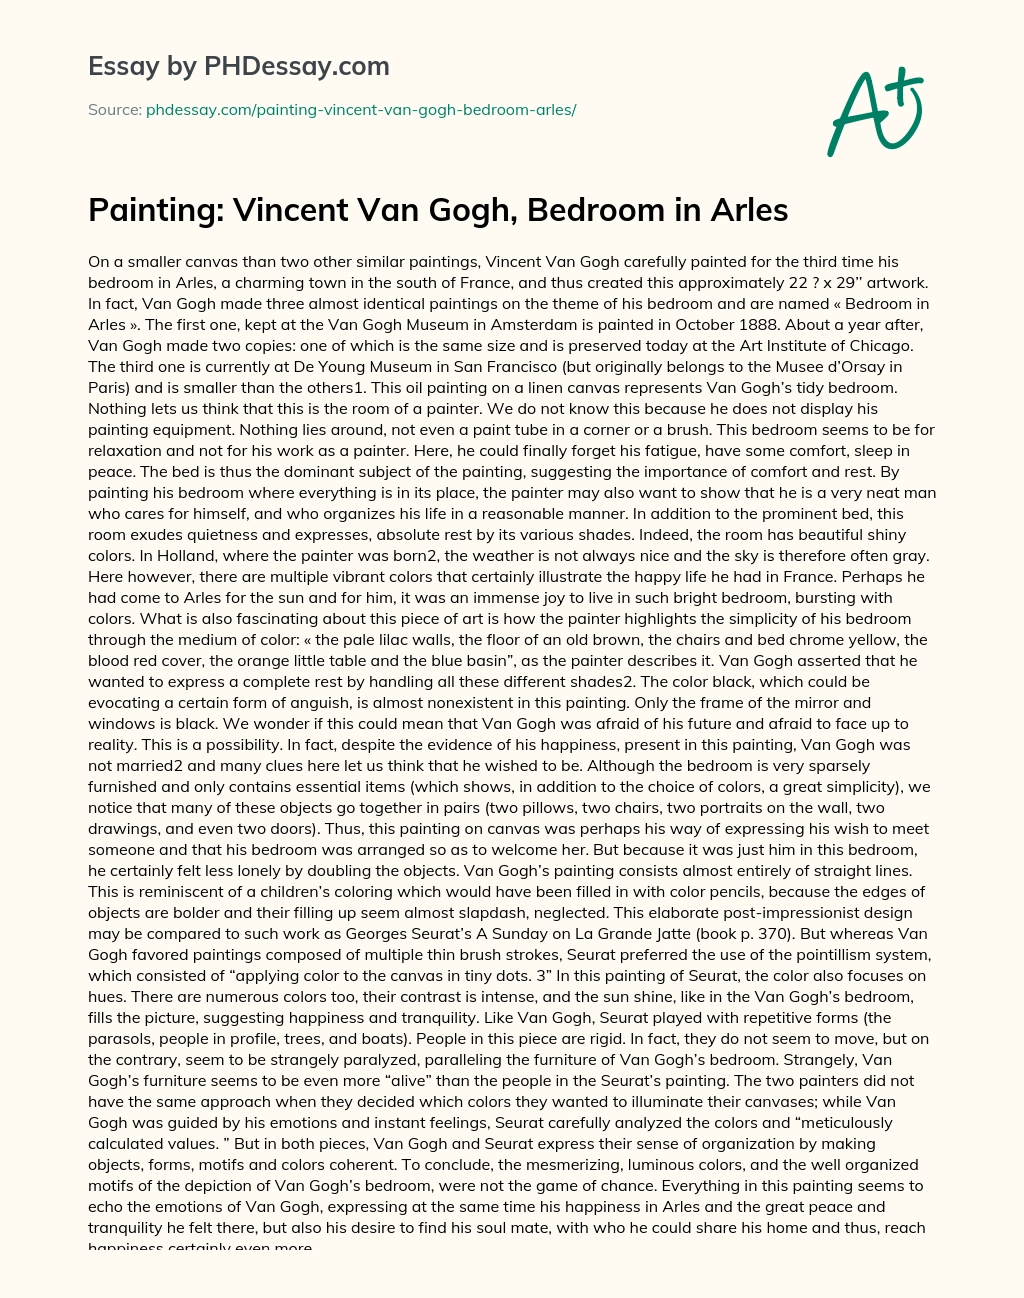 Painting: Vincent Van Gogh, Bedroom in Arles essay